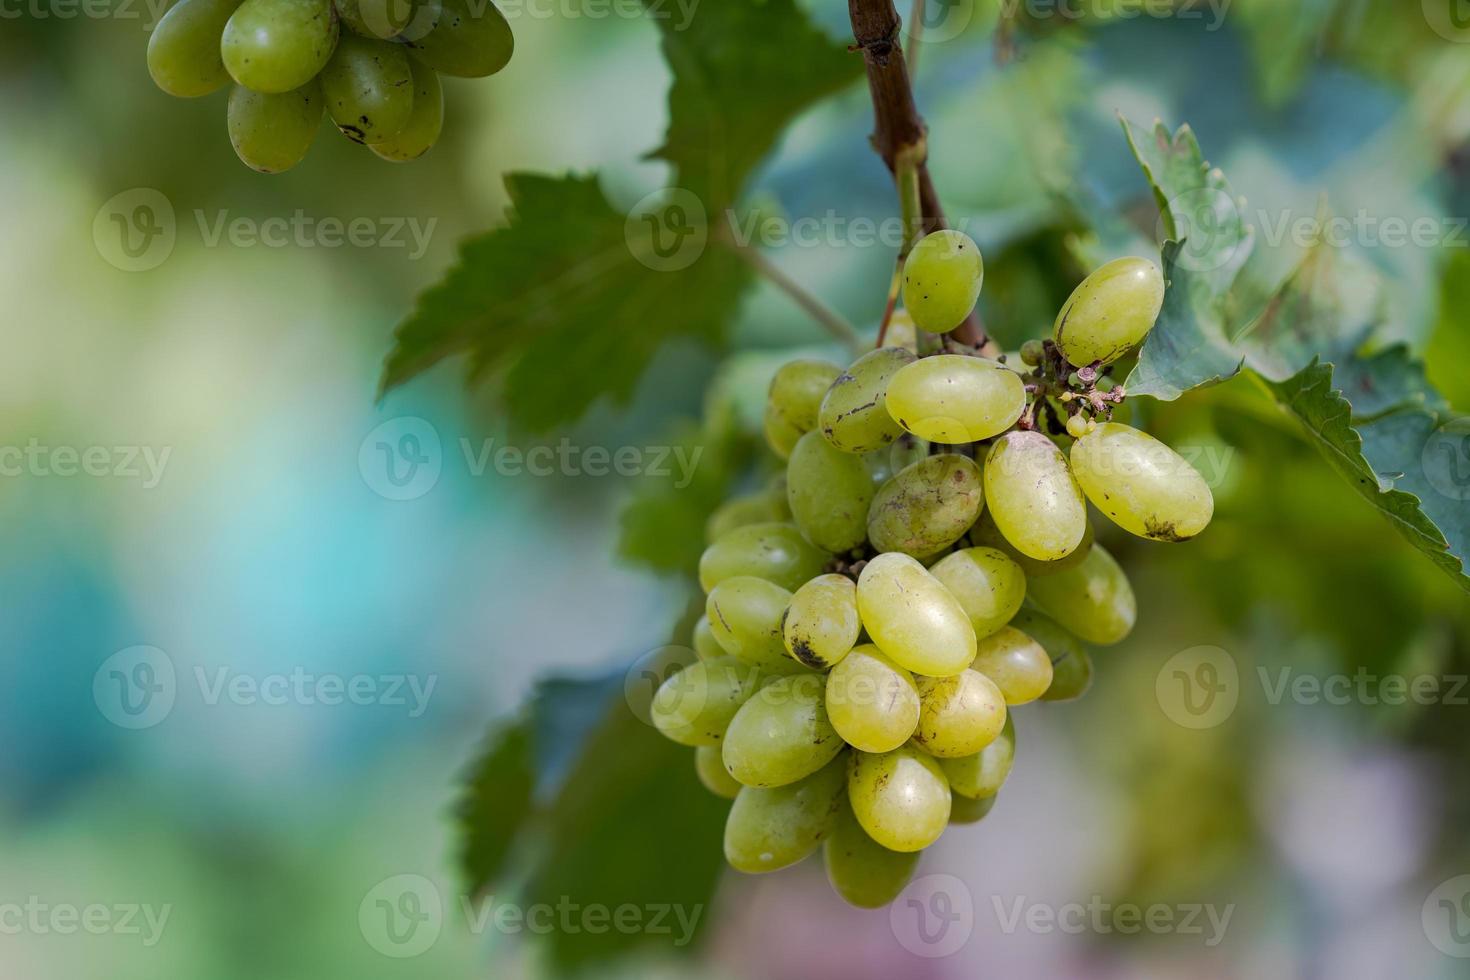 vingård med vita vindruvor på landsbygden, soliga druvklaser hänger på vinstocken foto